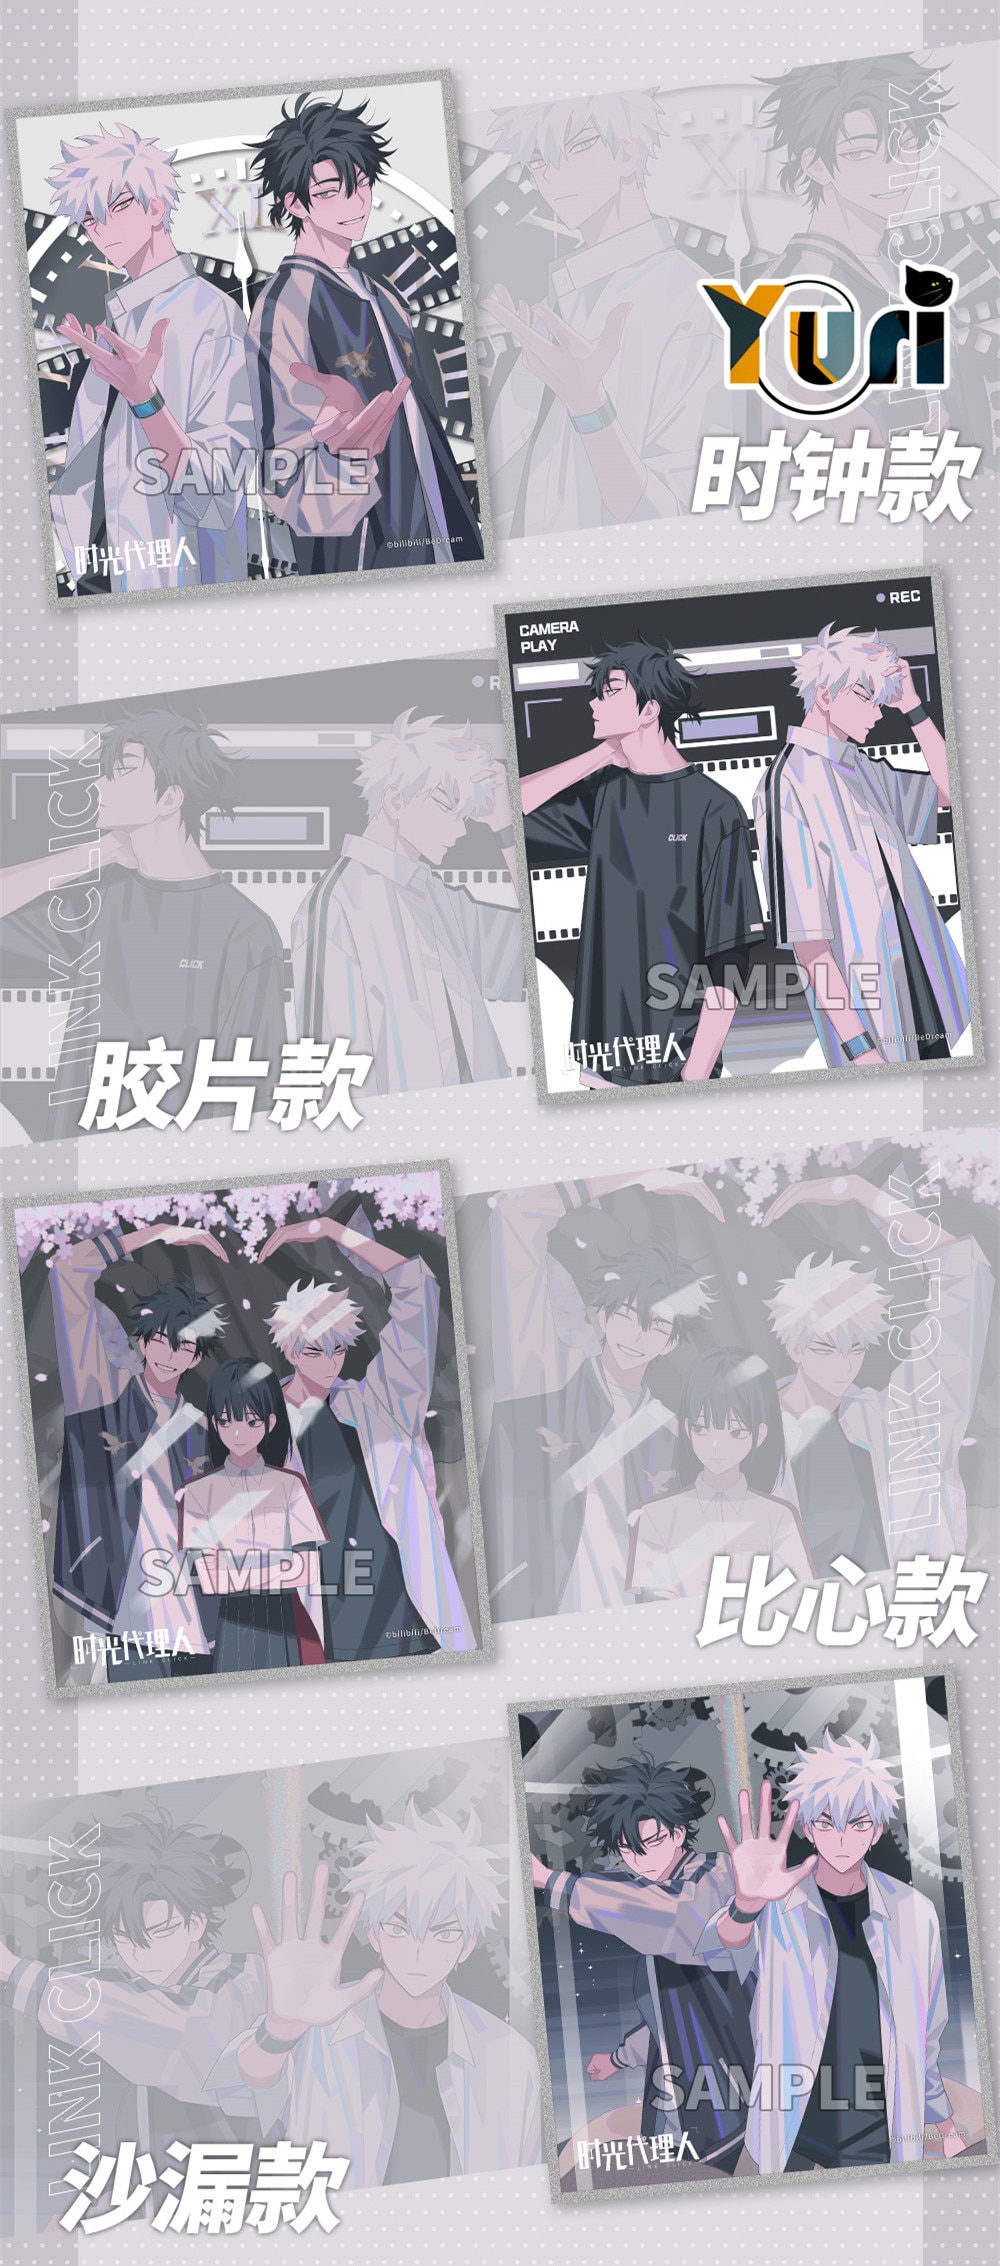 Anime Link Click Shiguang Daili Ren Cheng Xiaoshi Lu Guang Shikishi Colored Paper Sa Aug Bi. Mascot